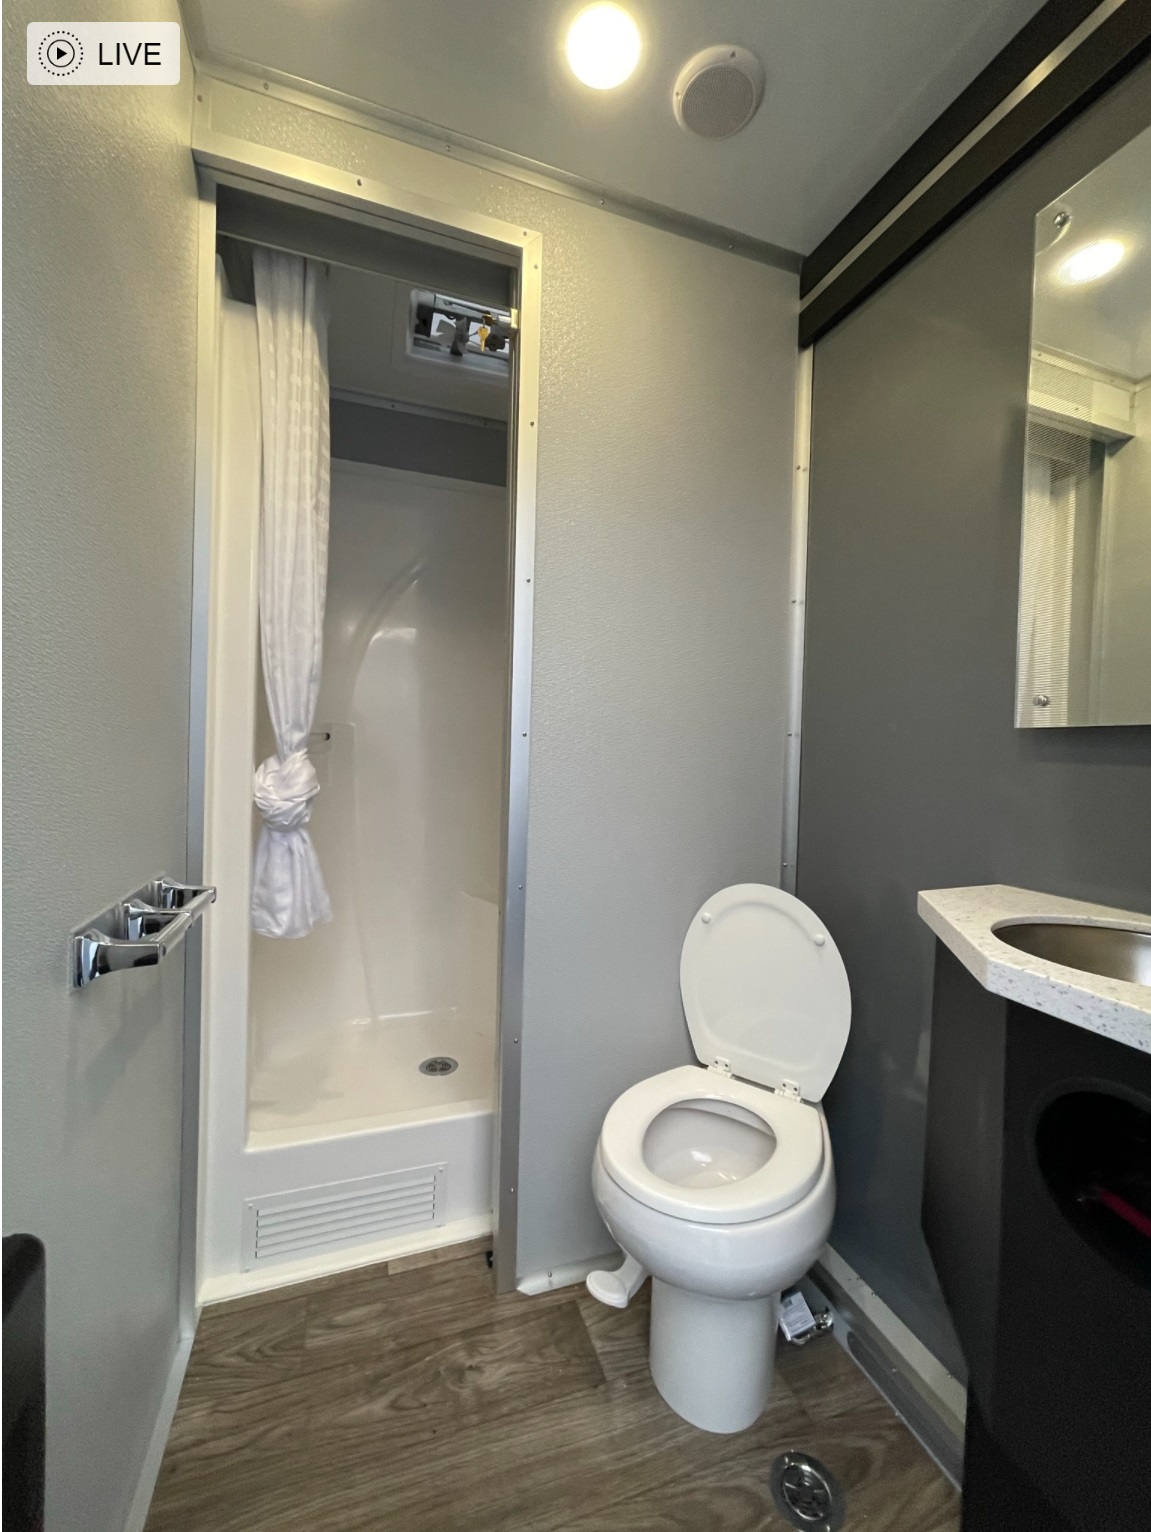  3 Station Shower-Restroom Combo